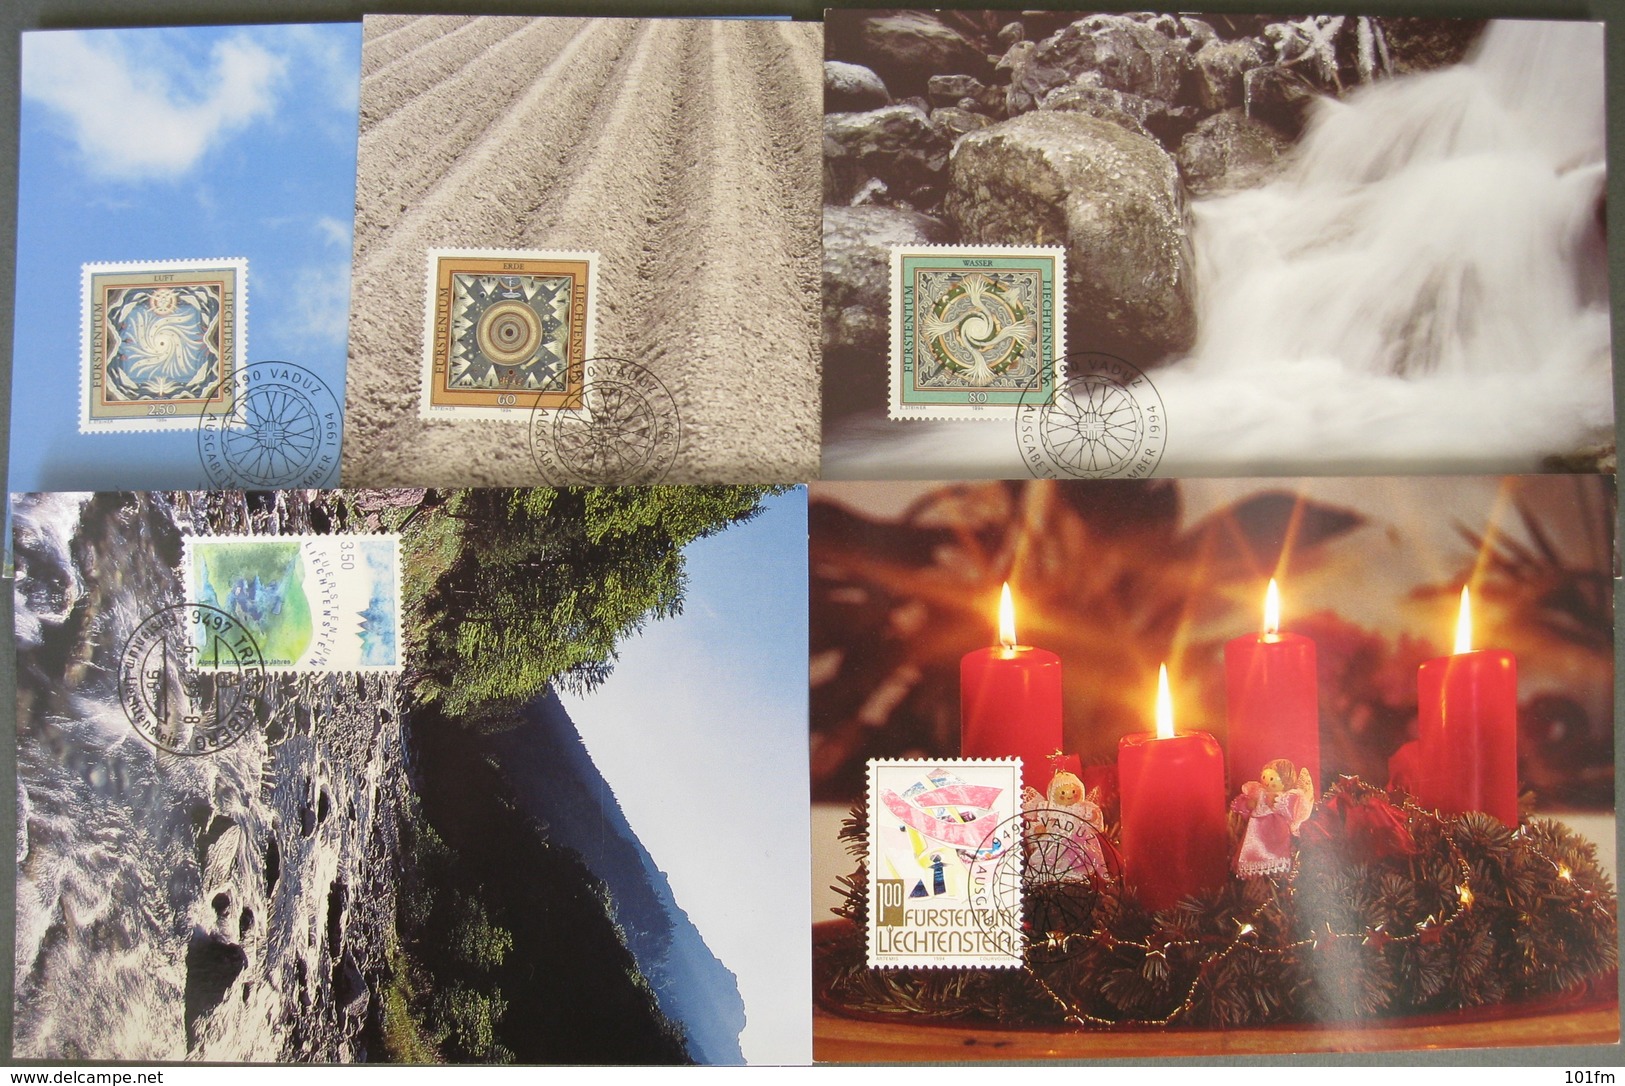 LOT OF 23 MAXIMUM CARDS - LIECHTENSTEIN - Lots & Kiloware (mixtures) - Max. 999 Stamps